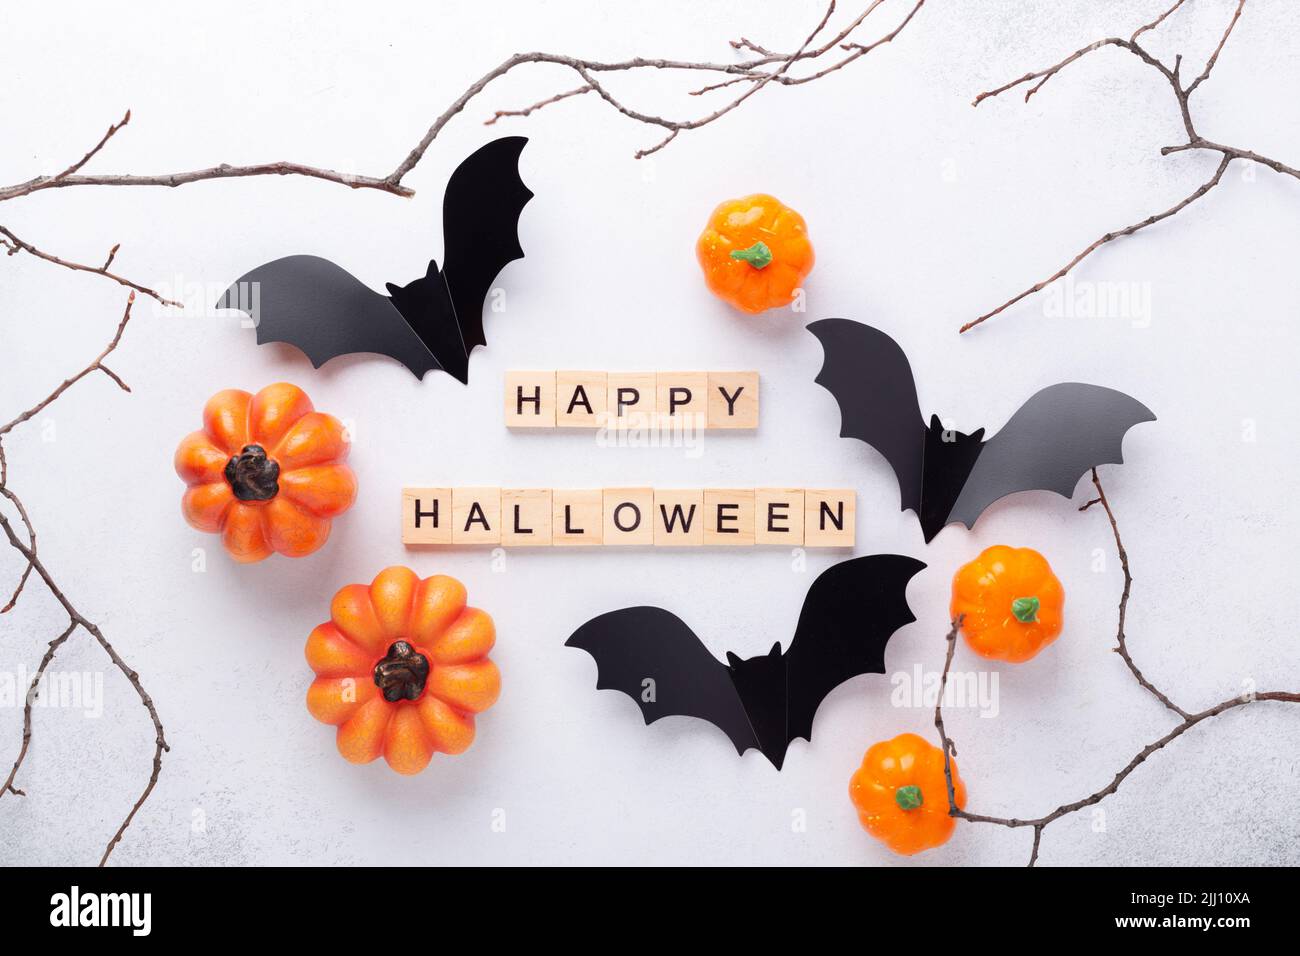 Happy Halloween blocs en bois, chauves-souris en papier noir et citrouilles sur fond blanc Banque D'Images